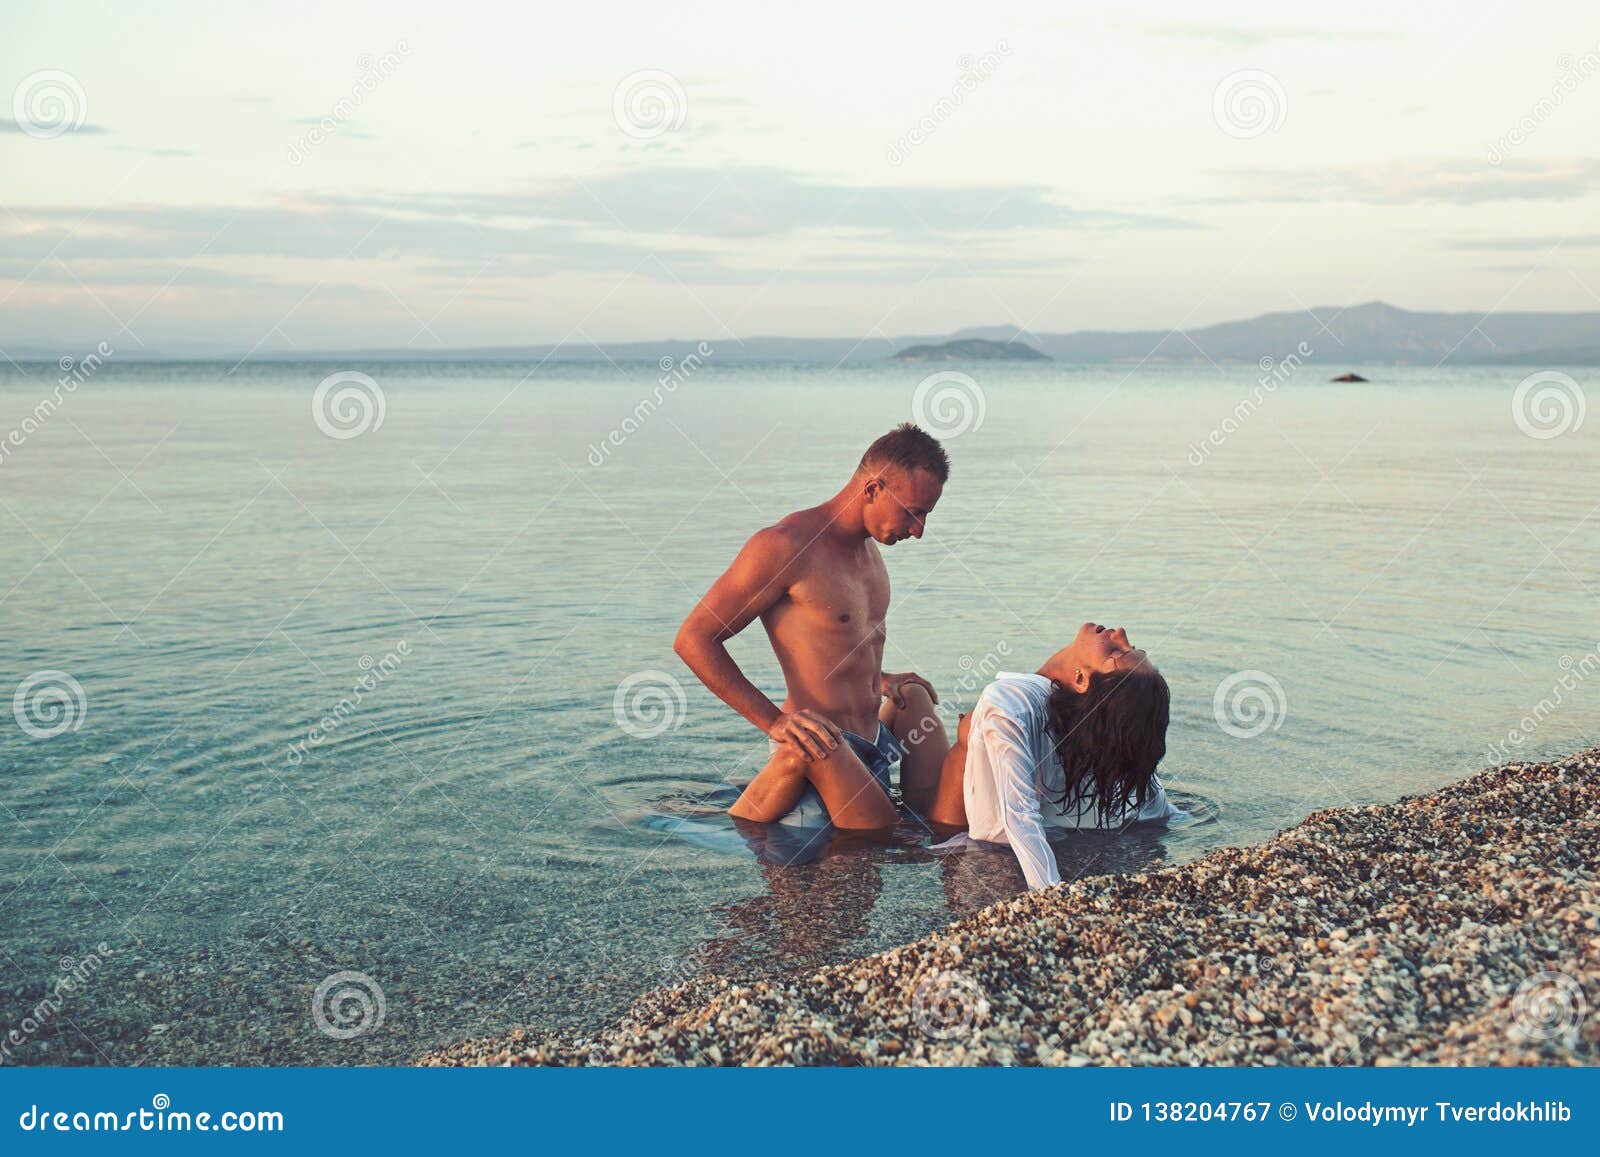 Sex nude beach